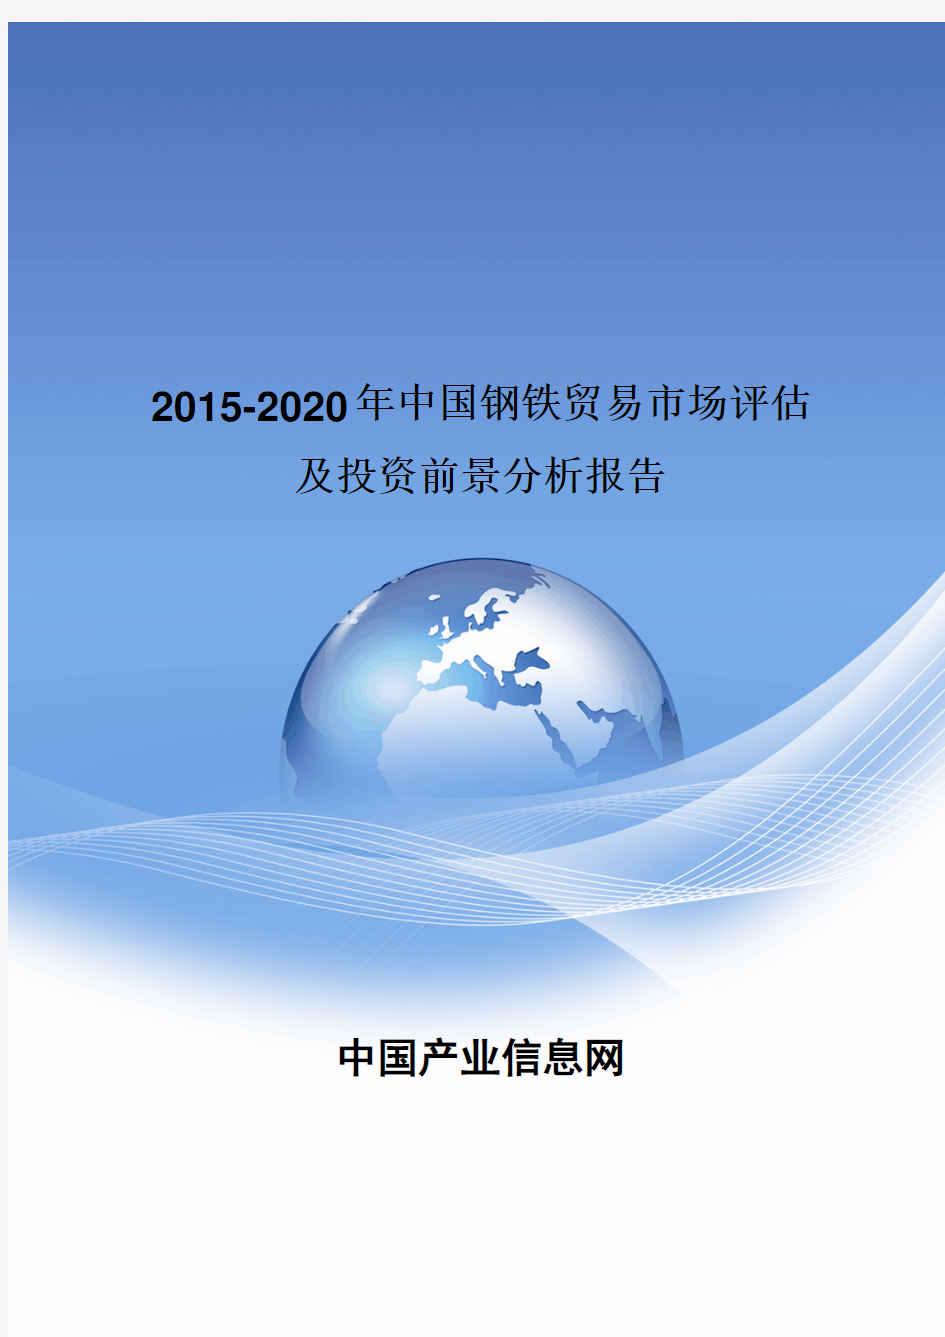 2015-2020年中国钢铁贸易市场评估及投资前景分析报告